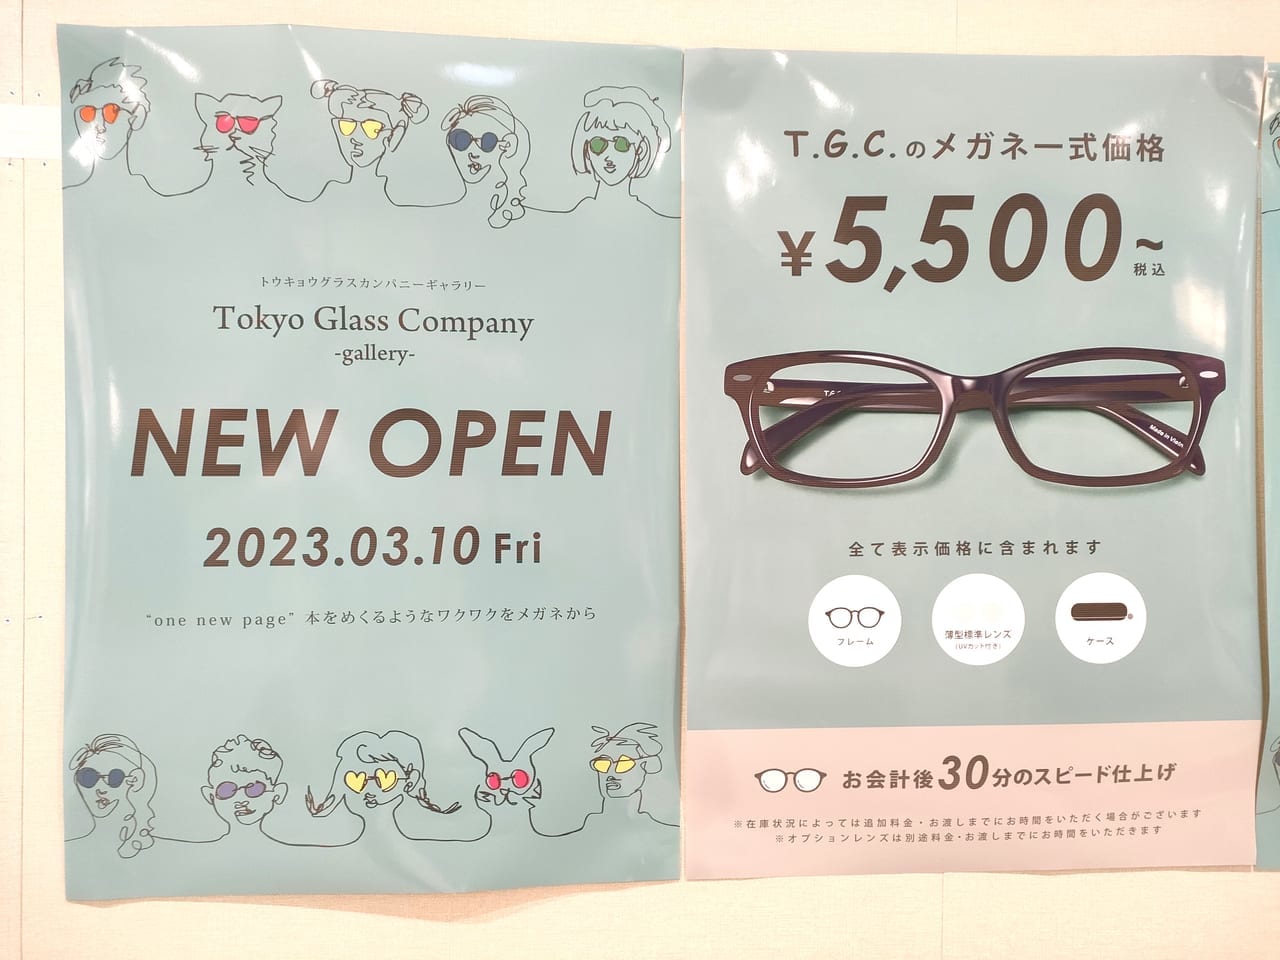 2023年3月10日オープン「T.G.C. Tokyo Glass Company 」